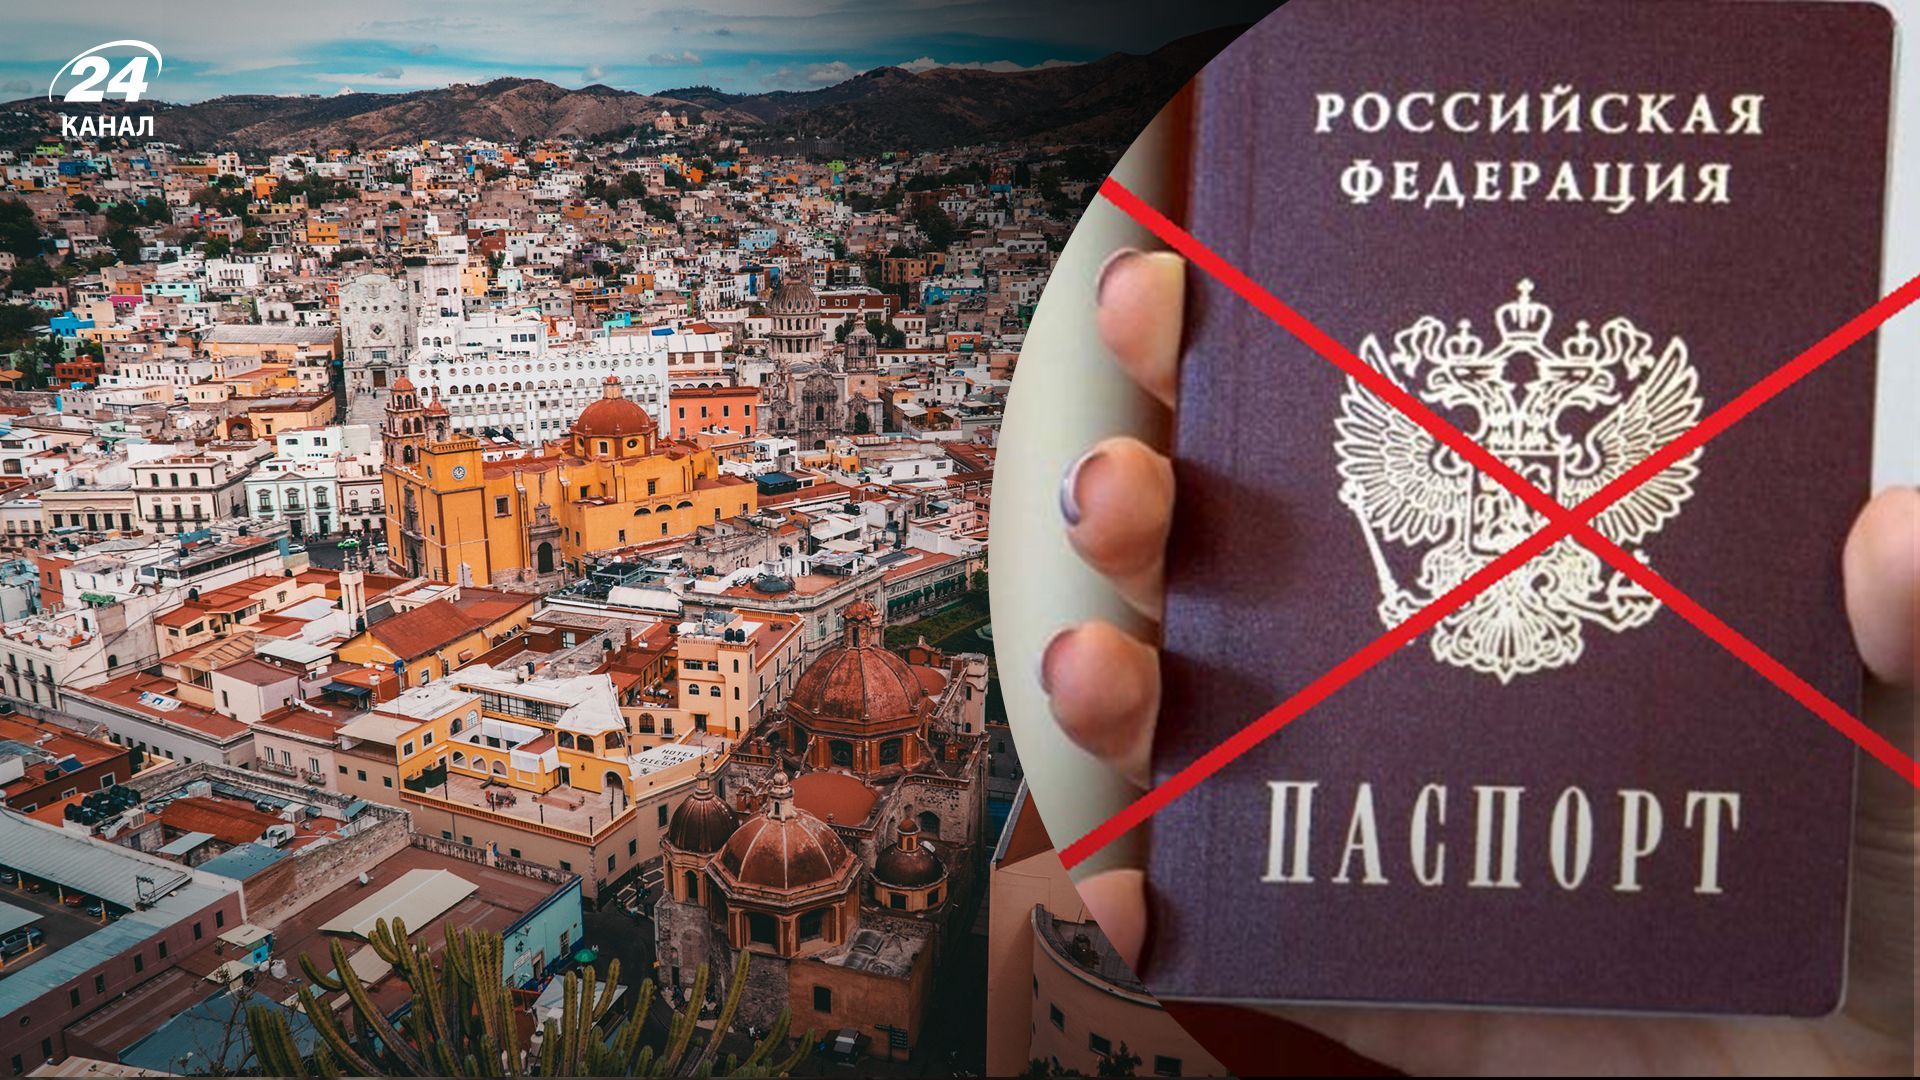 Троллинг дня: россиянам, которые обращаются в посольство Мексики за визами, отказывают на украинском